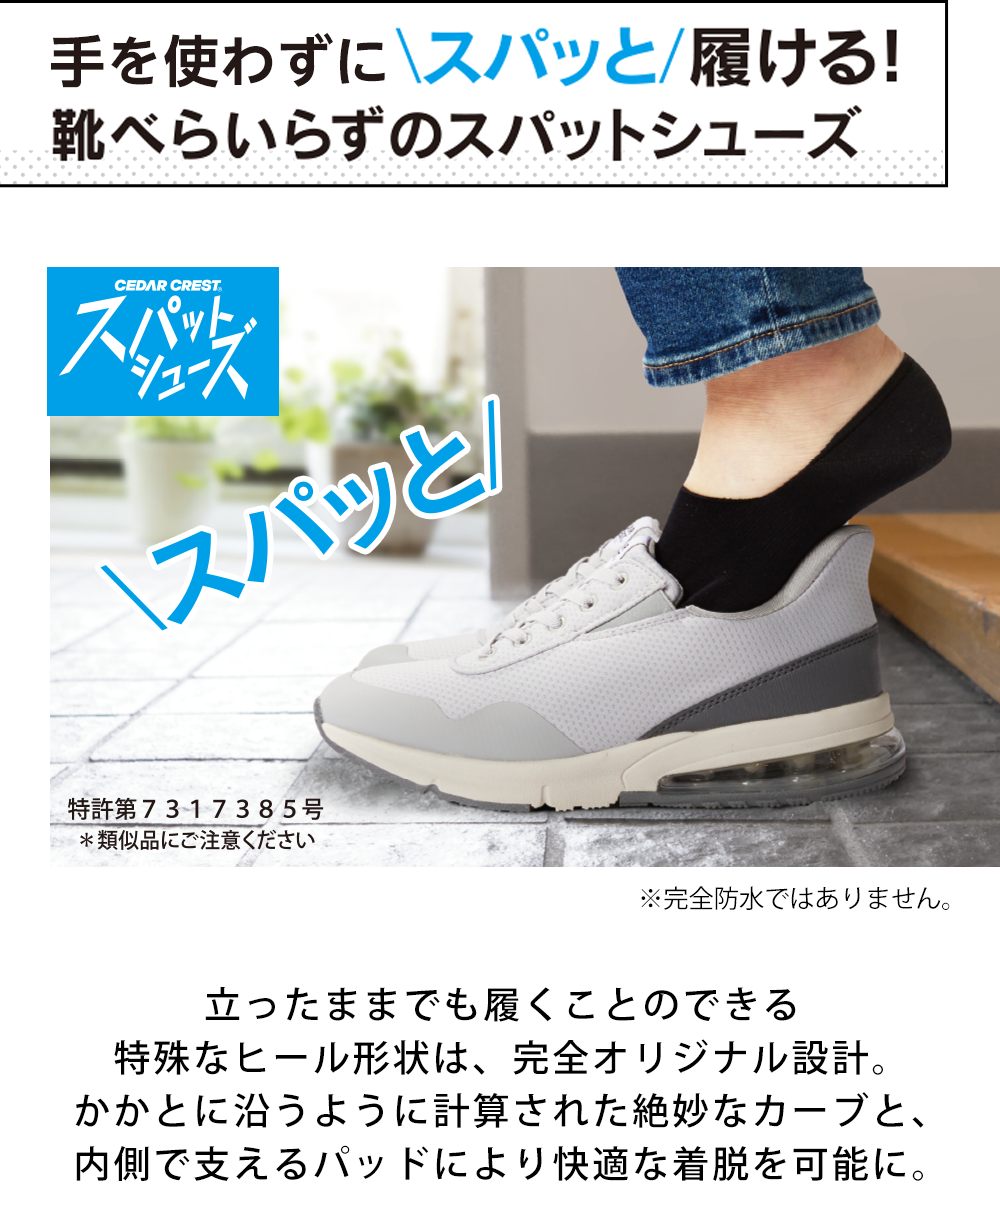 kutsu.com MAGAZINE│靴・スニーカーの通販 kutsu.com│チヨダ公式 